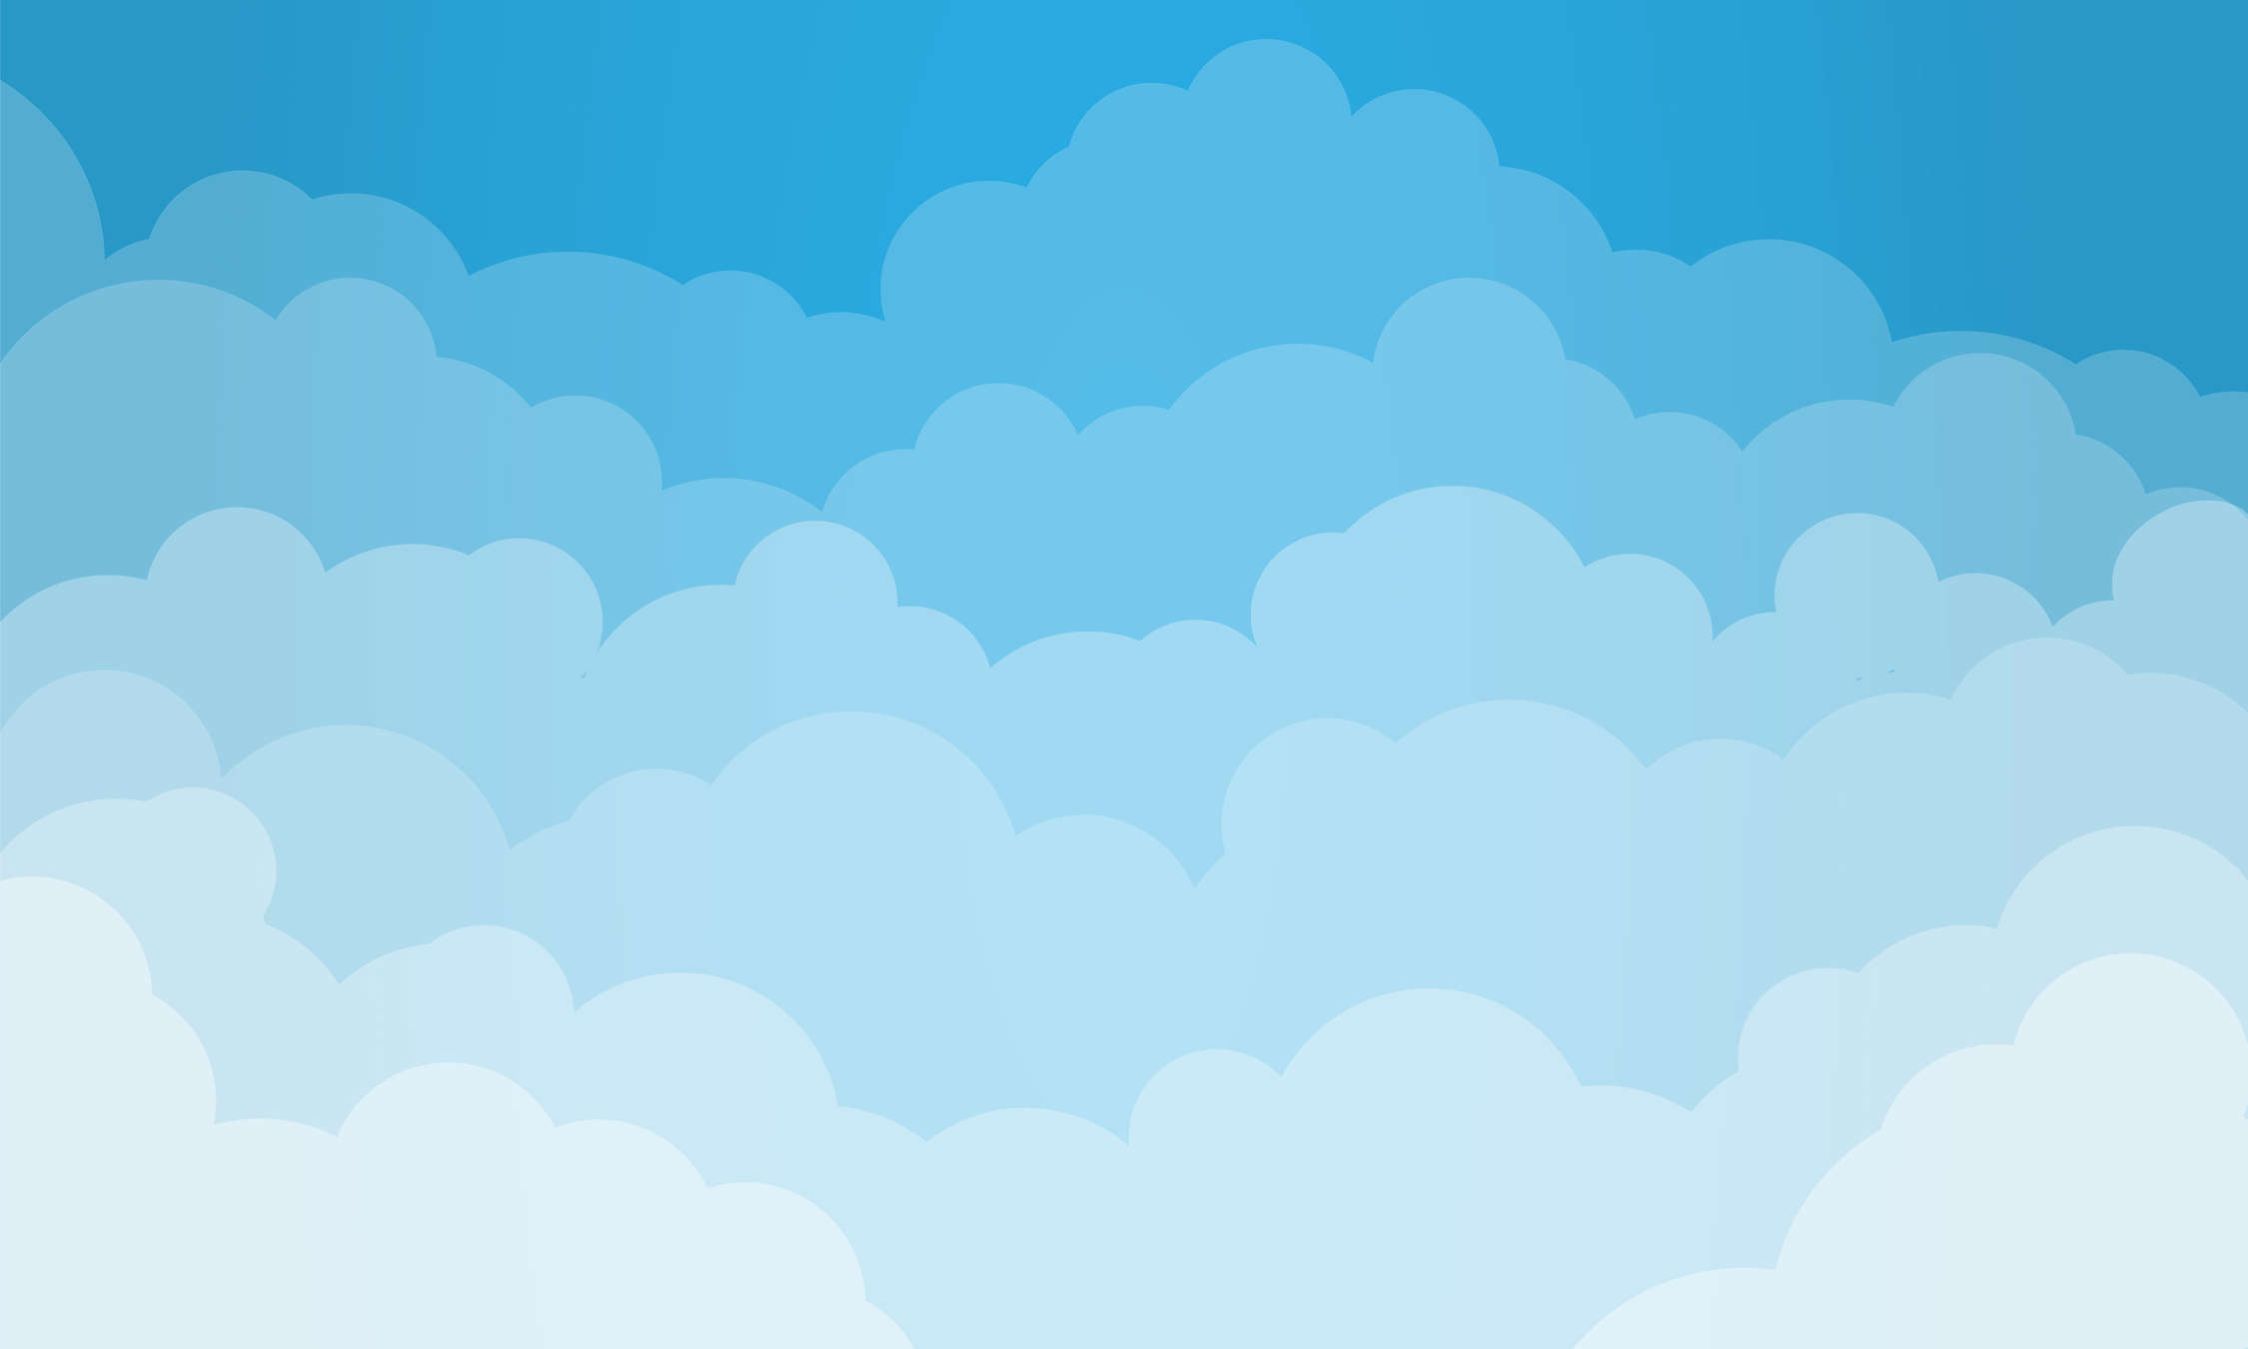             Digital behang Lucht met wolken in komische stijl - Glad & mat vlies
        